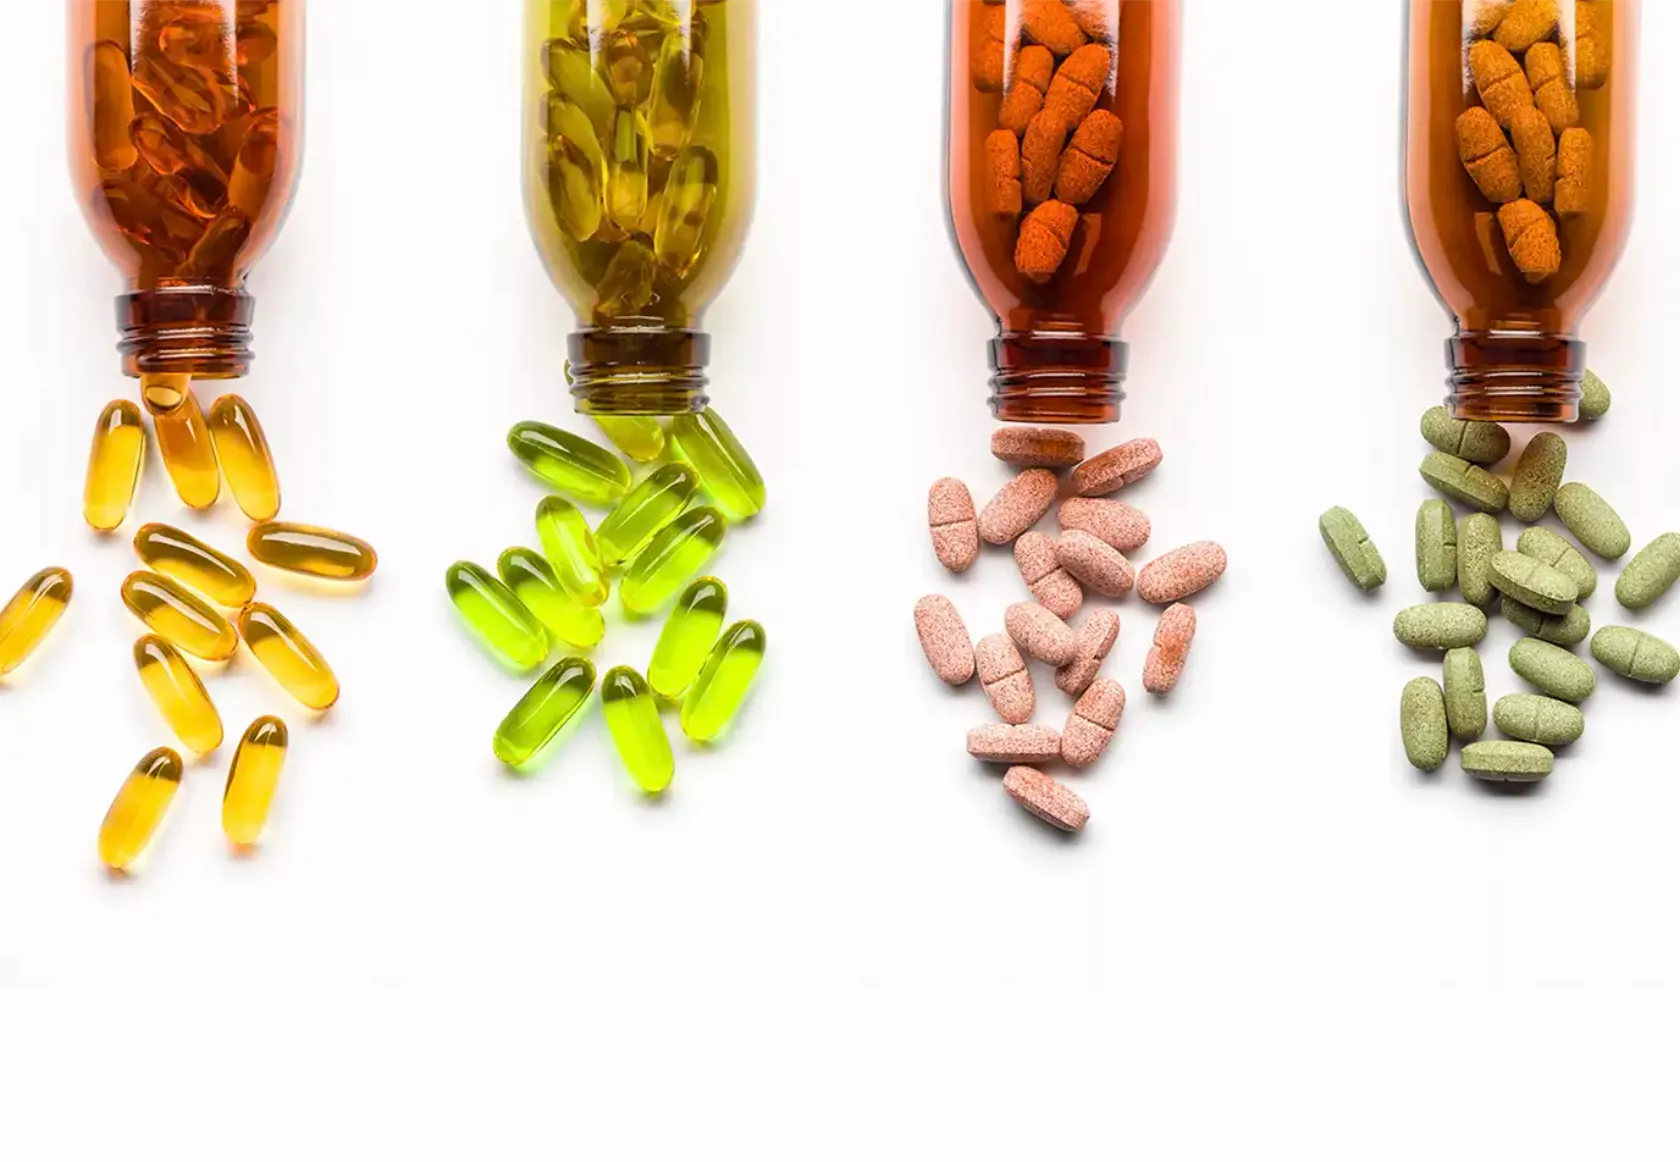 Arzneiflaschen, aus denen gelbe, grüne und rosafarbene Kapseln geschüttet werden.